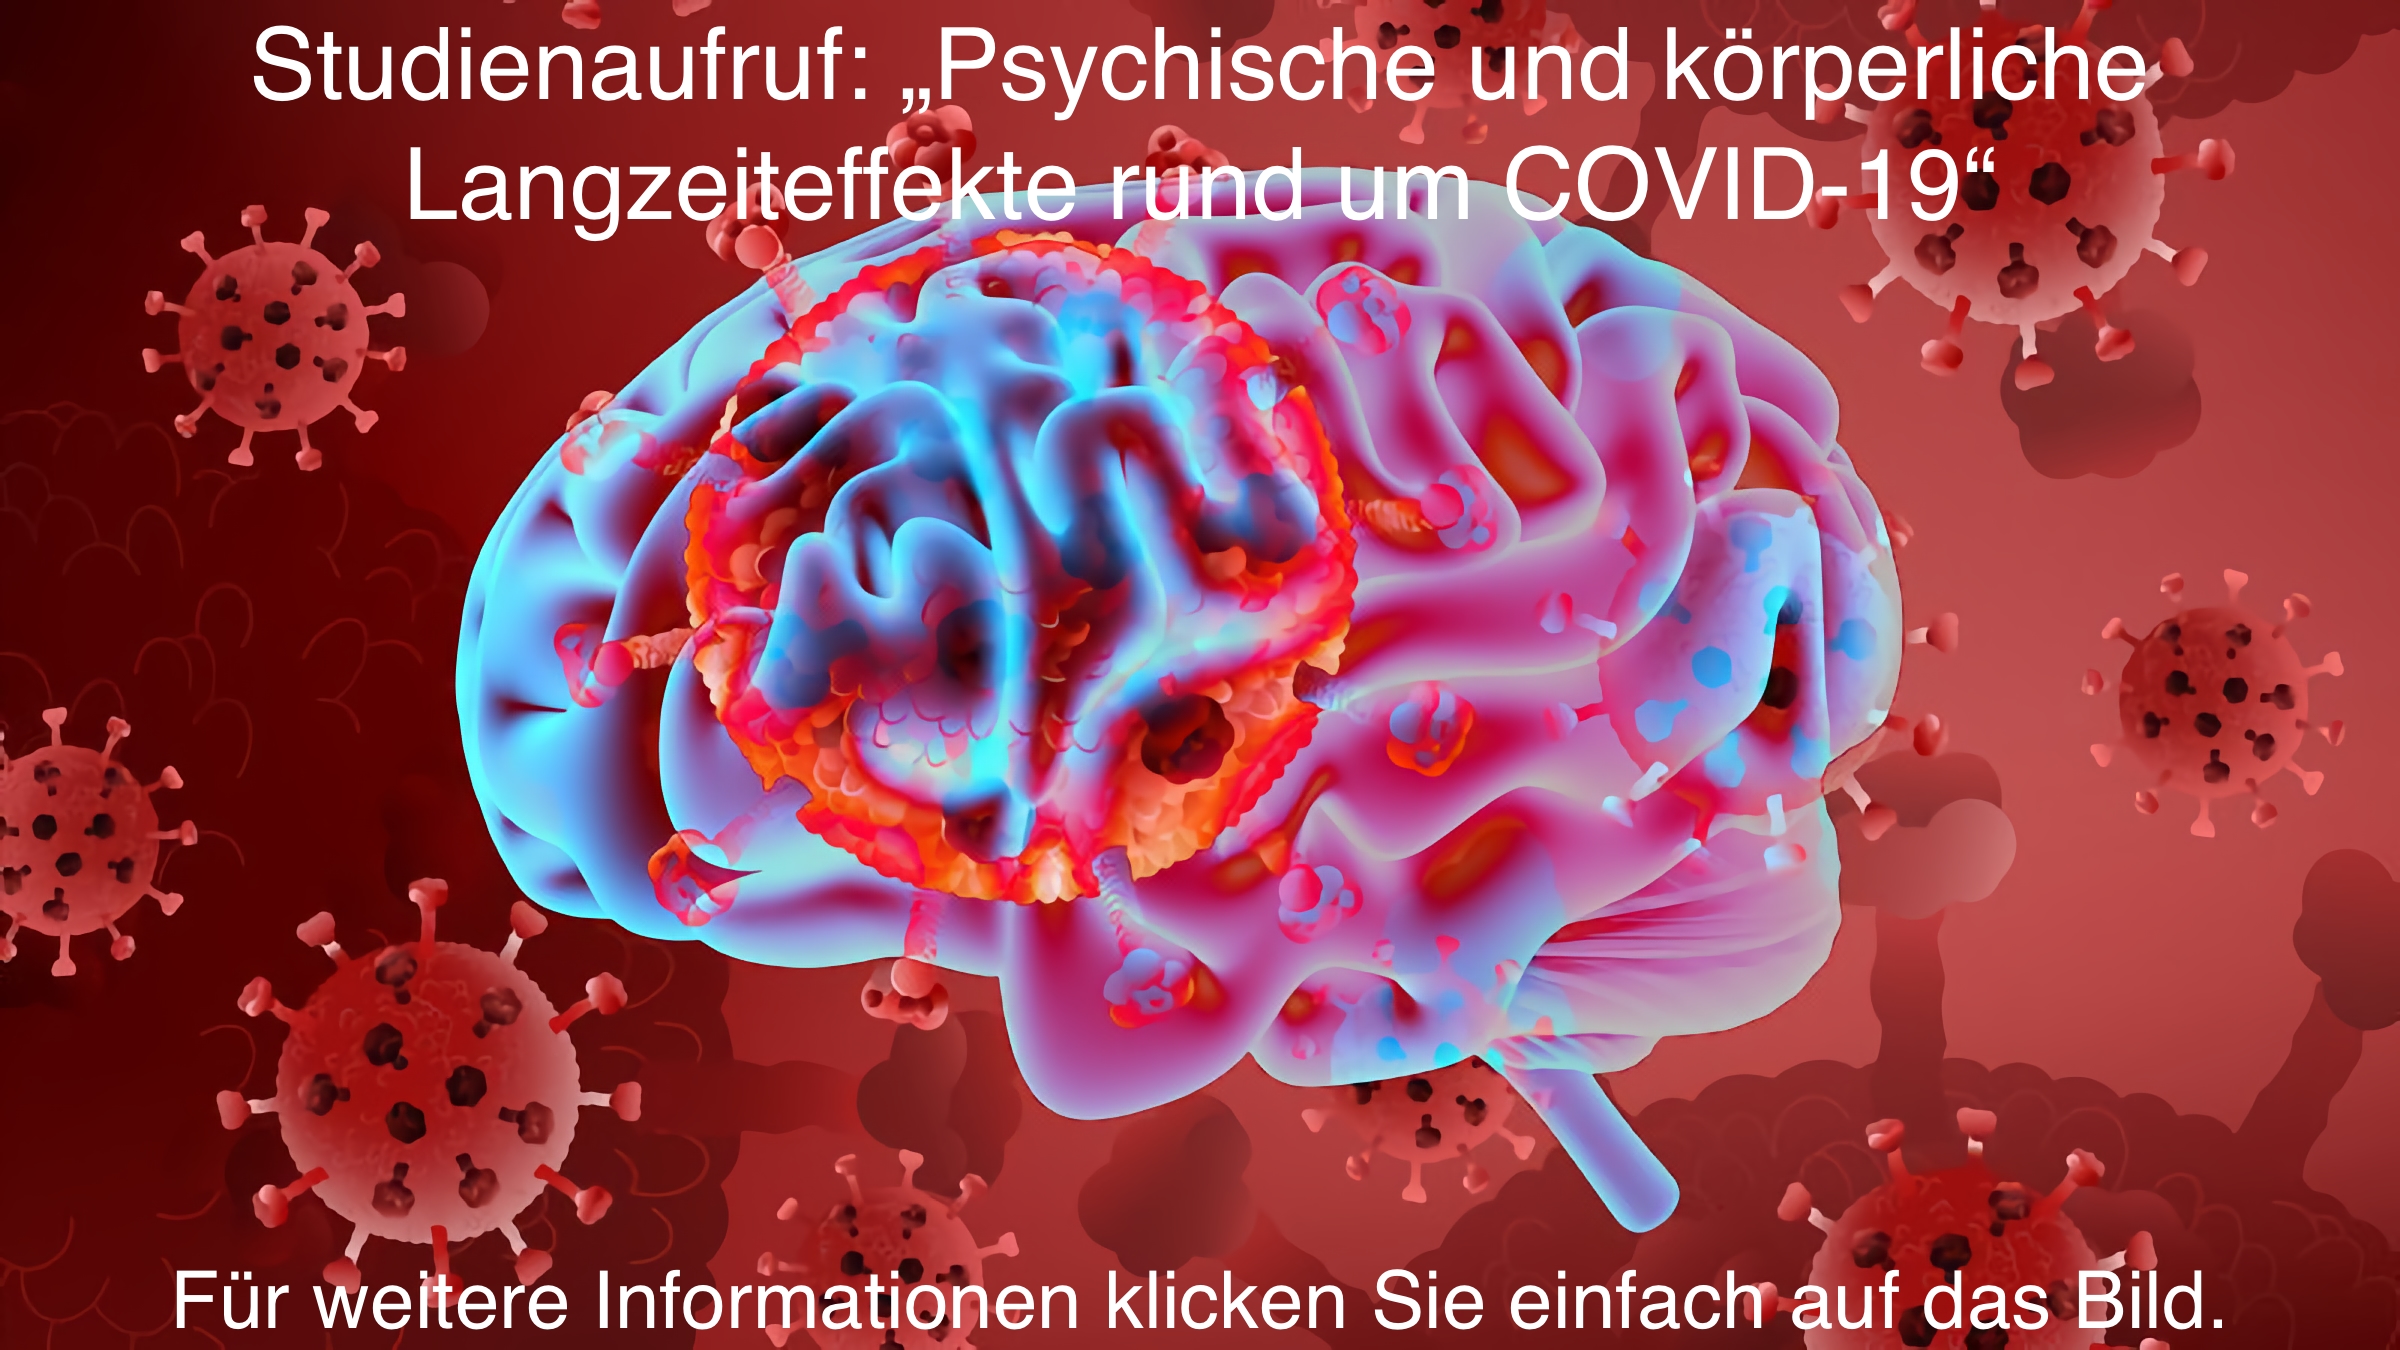 Studienaufruf: „Psychische und körperliche Langzeiteffekte rund um COVID-19“ - Für weitere Informationen klicken Sie einfach auf das Bild.